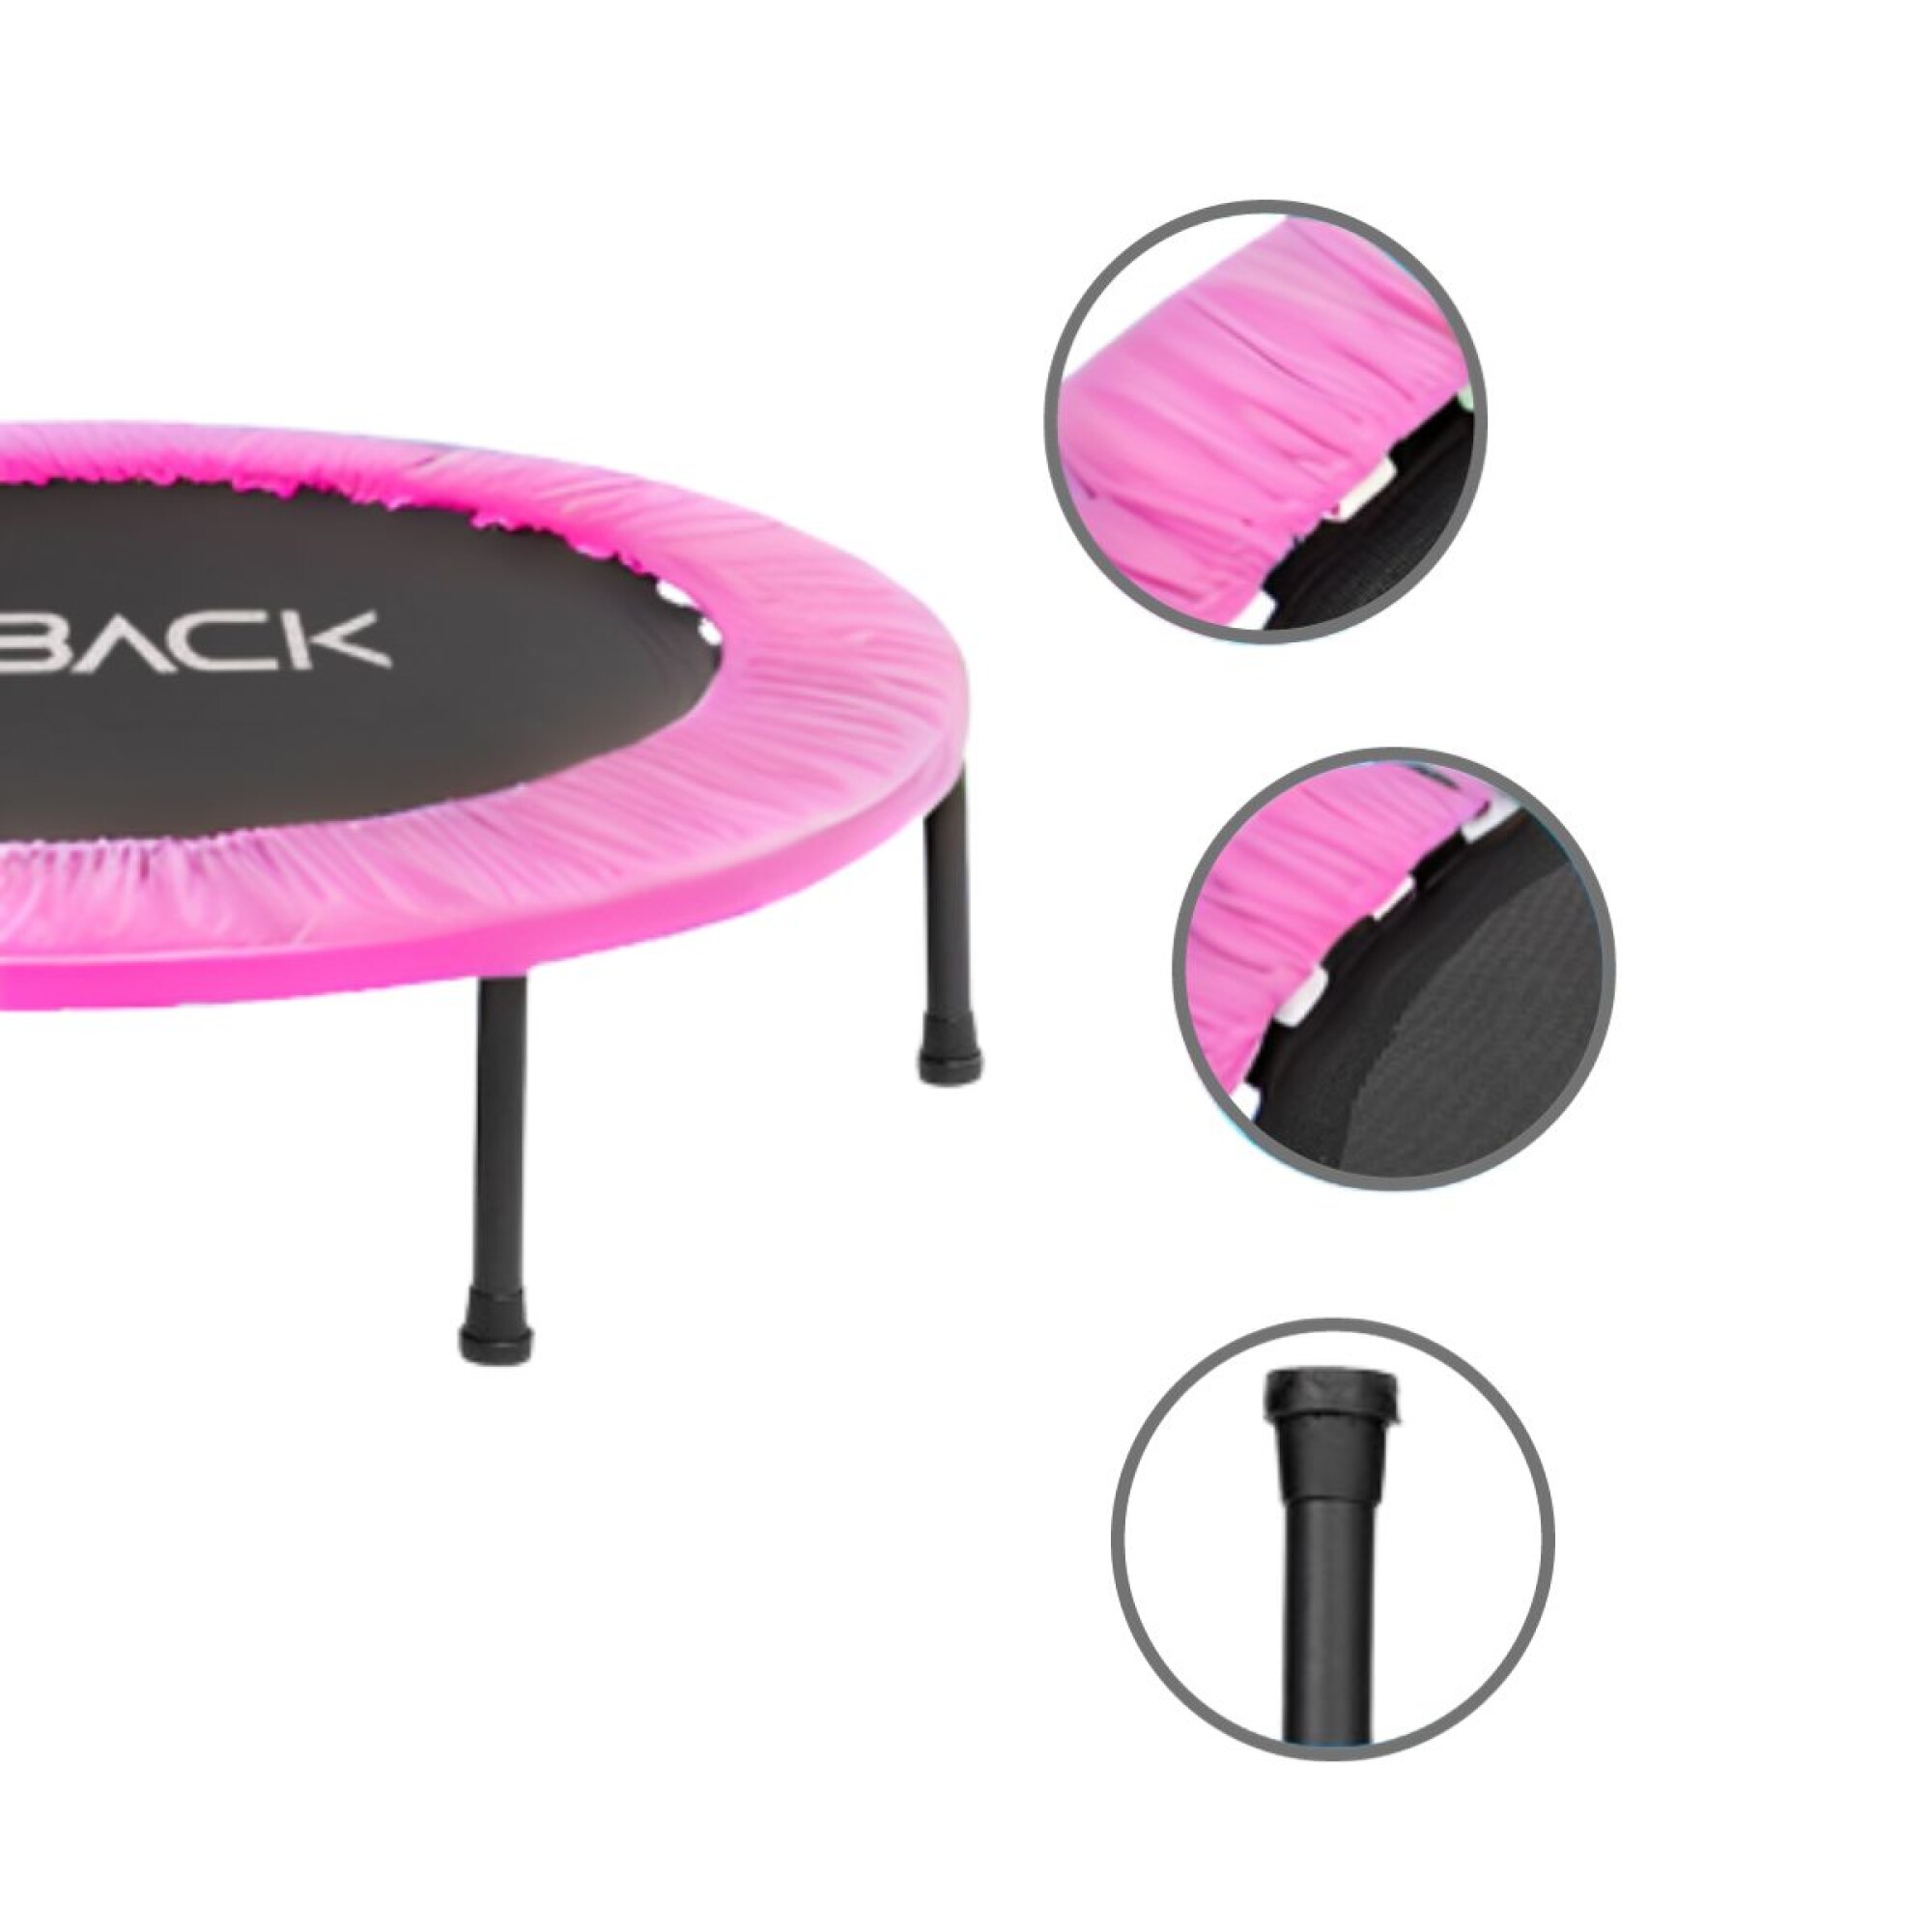 Trampolín cama elástica plegable portátil para fitness mini rebote